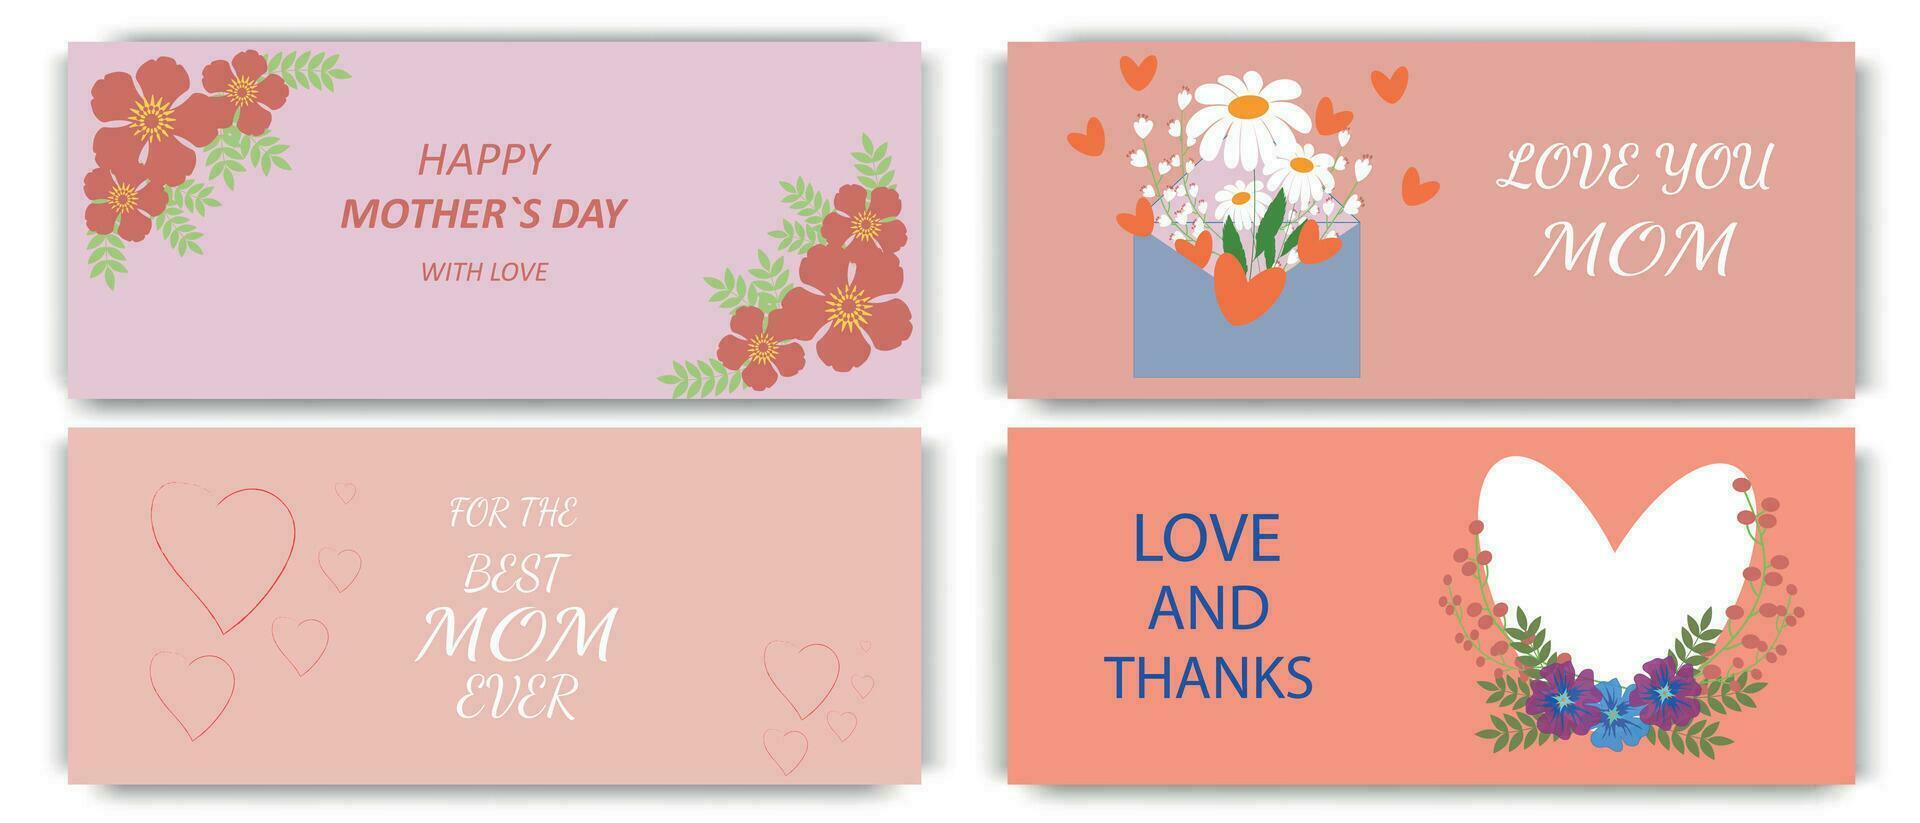 gelukkig moeders dag elegant horizontaal groet spandoeken. vector tekst bloemen en hart voor uw geliefde mama. de het beste groet kaarten.